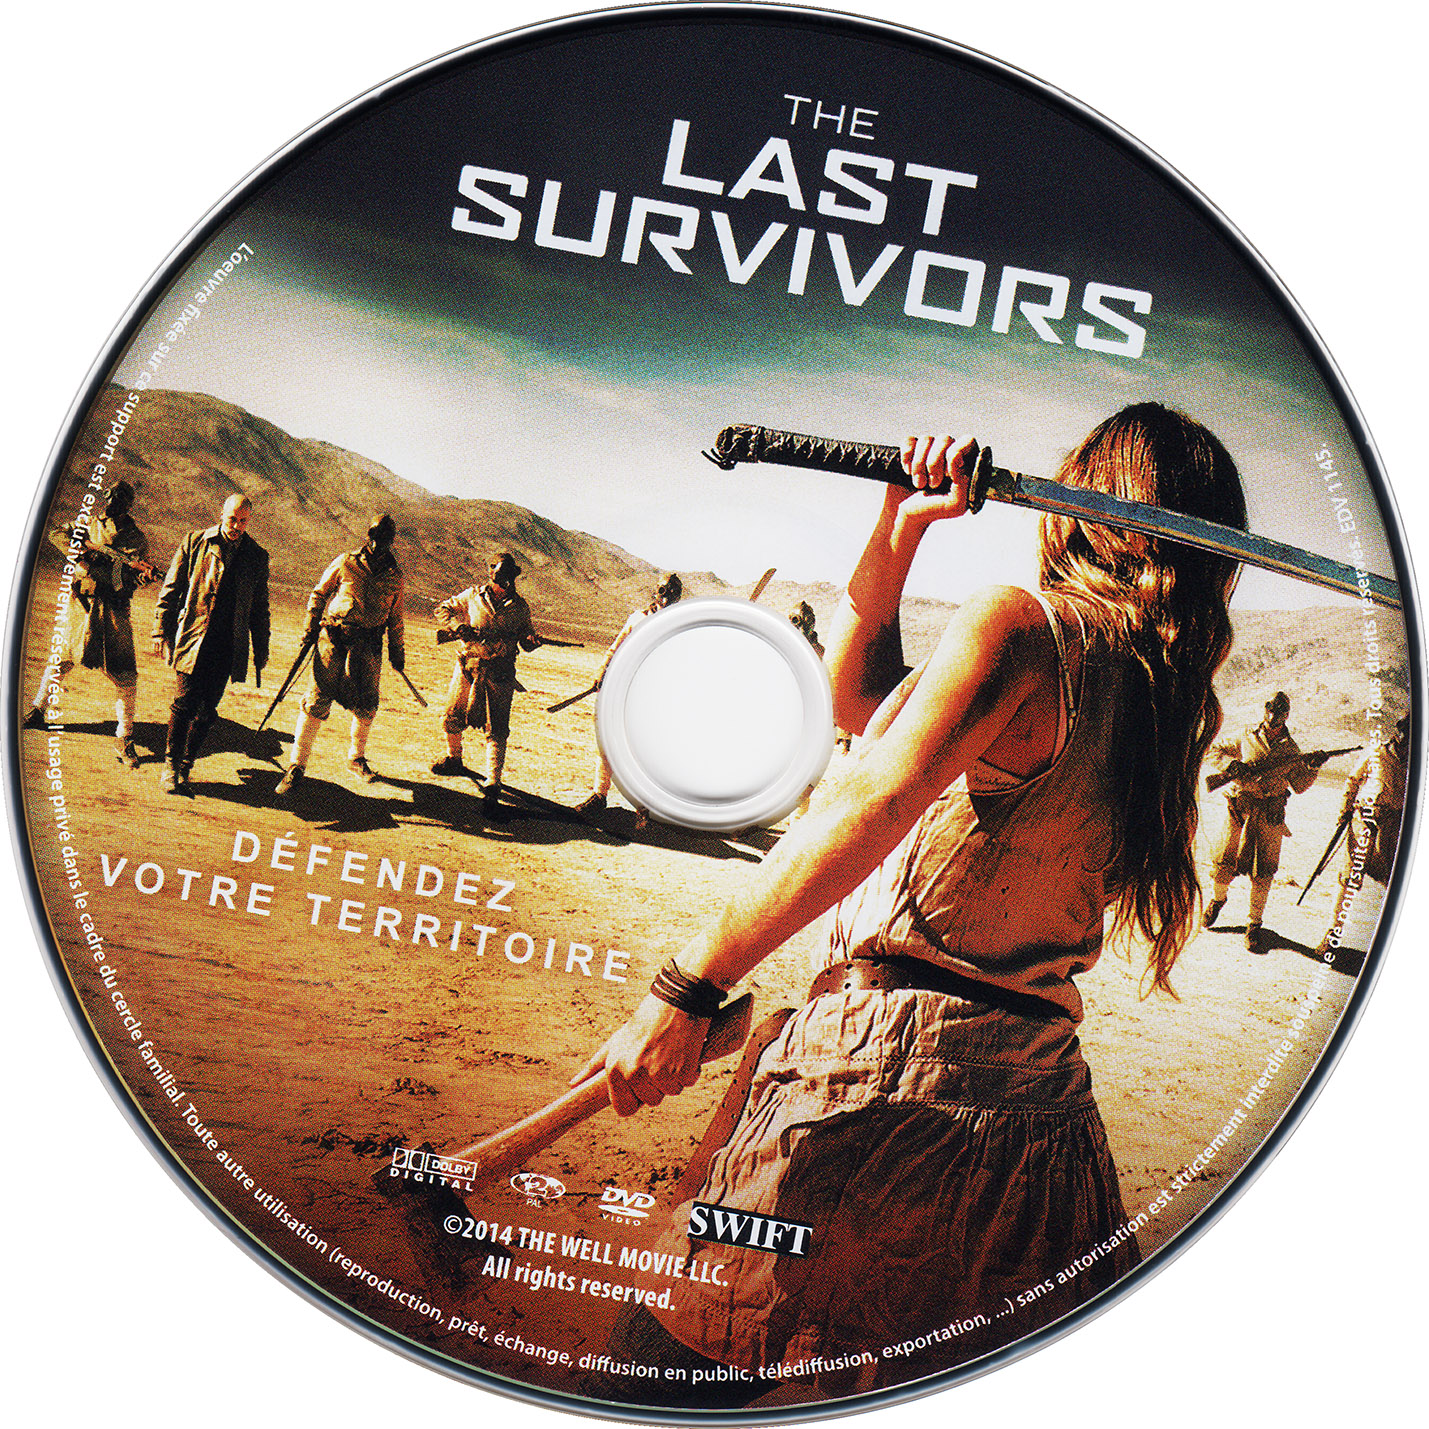 The last survivors